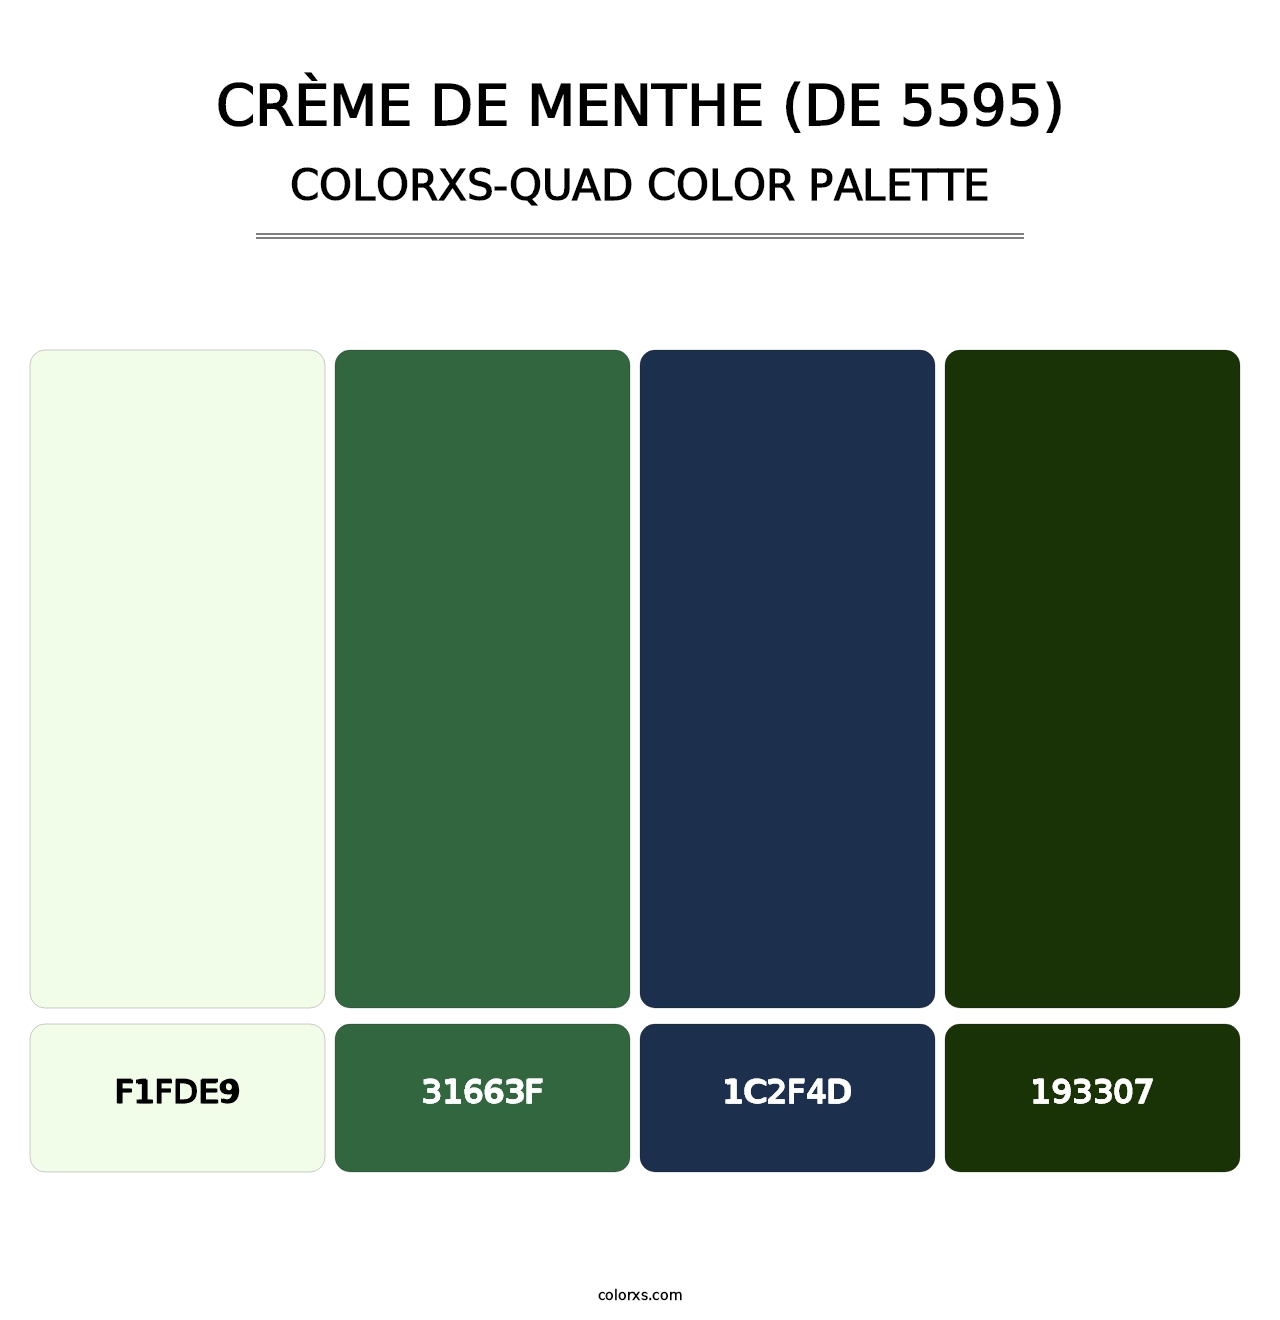 Crème de Menthe (DE 5595) - Colorxs Quad Palette